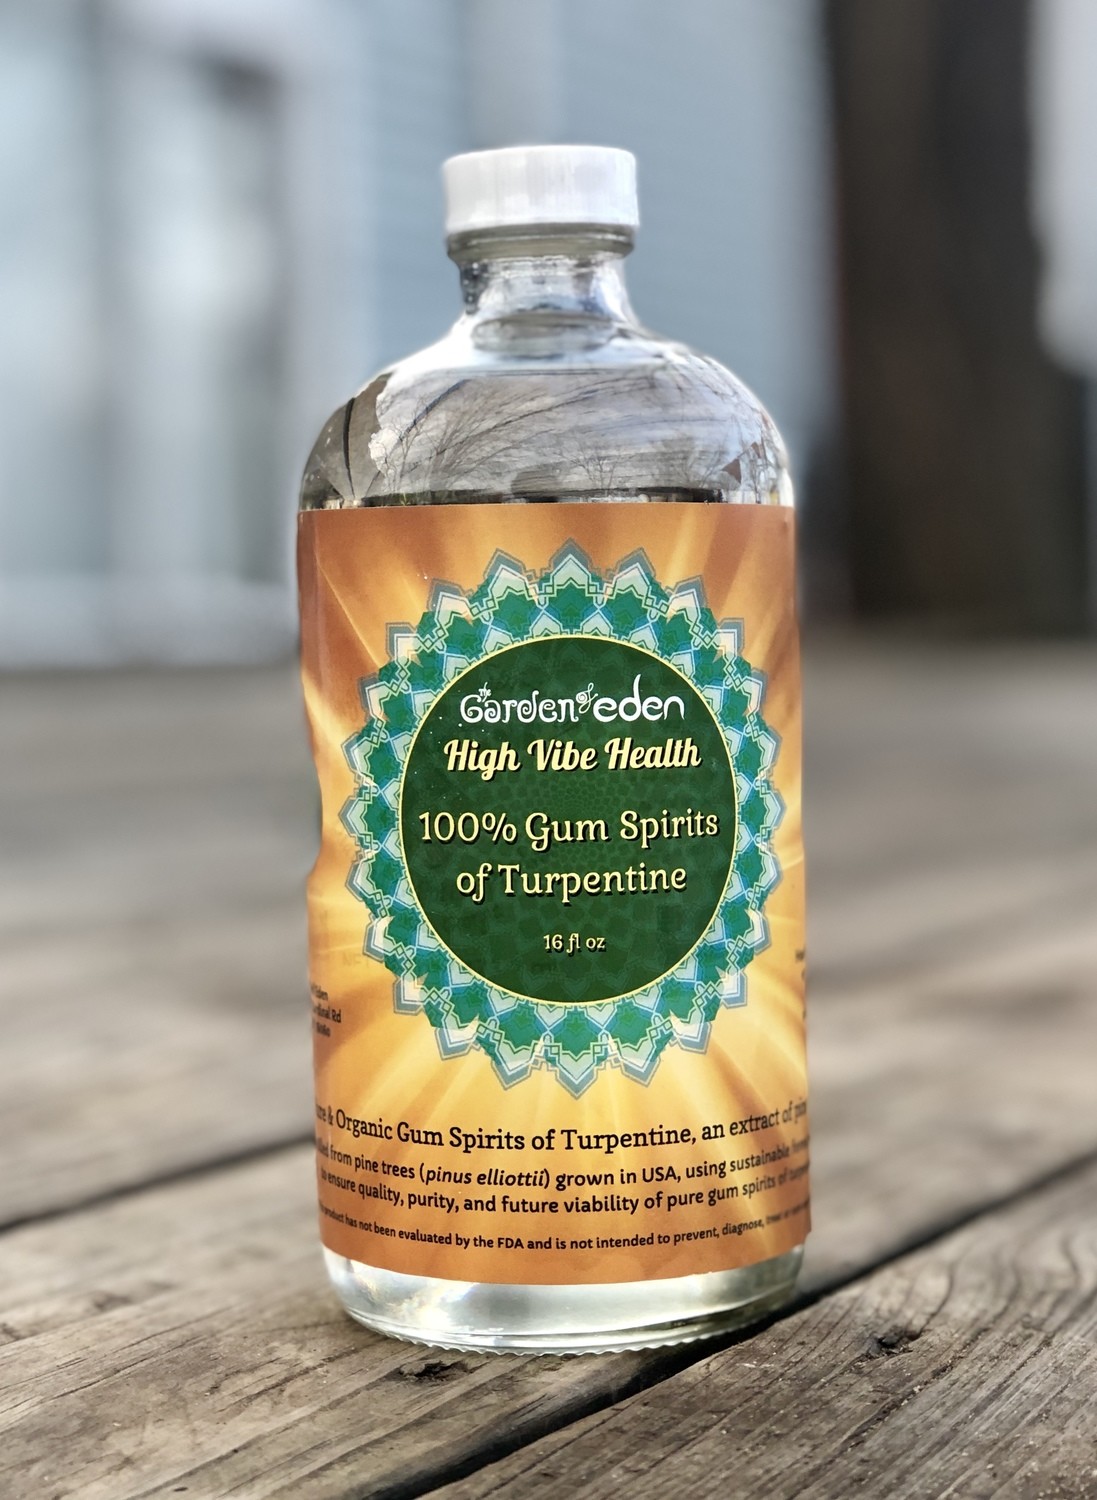 16 oz 100% Gum Spirits of Turpentine